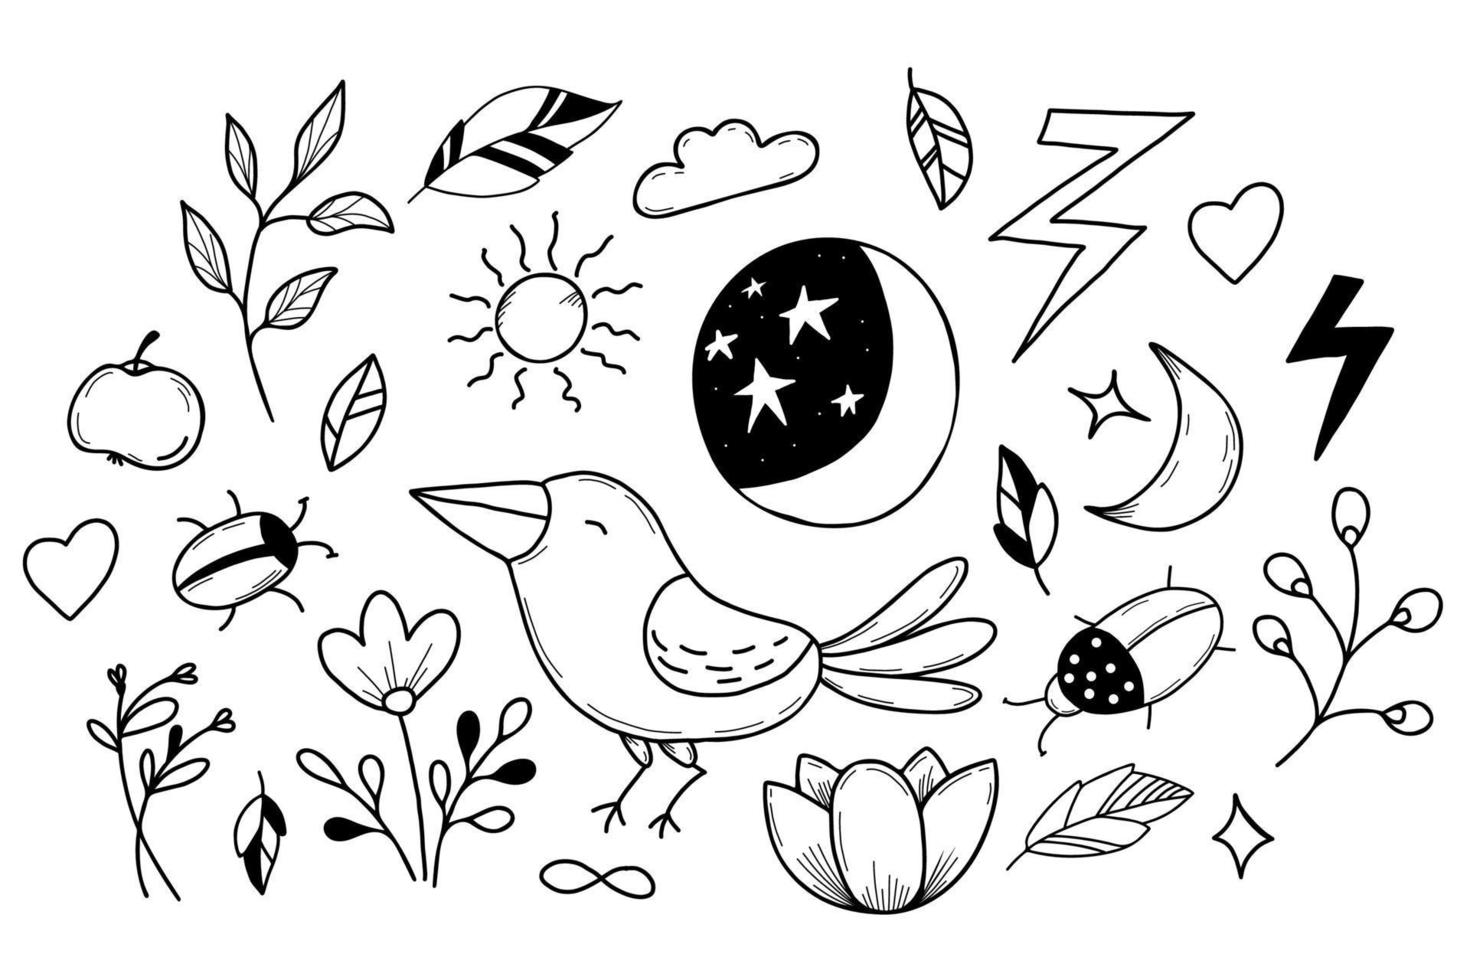 uppsättning magiska tecken, skalbagge och kråka, blomma och måne med stjärnhimmel i handgjord linjär doodle-stil. vektor illustration. isolerade element för design, dekor, vykort och tryck